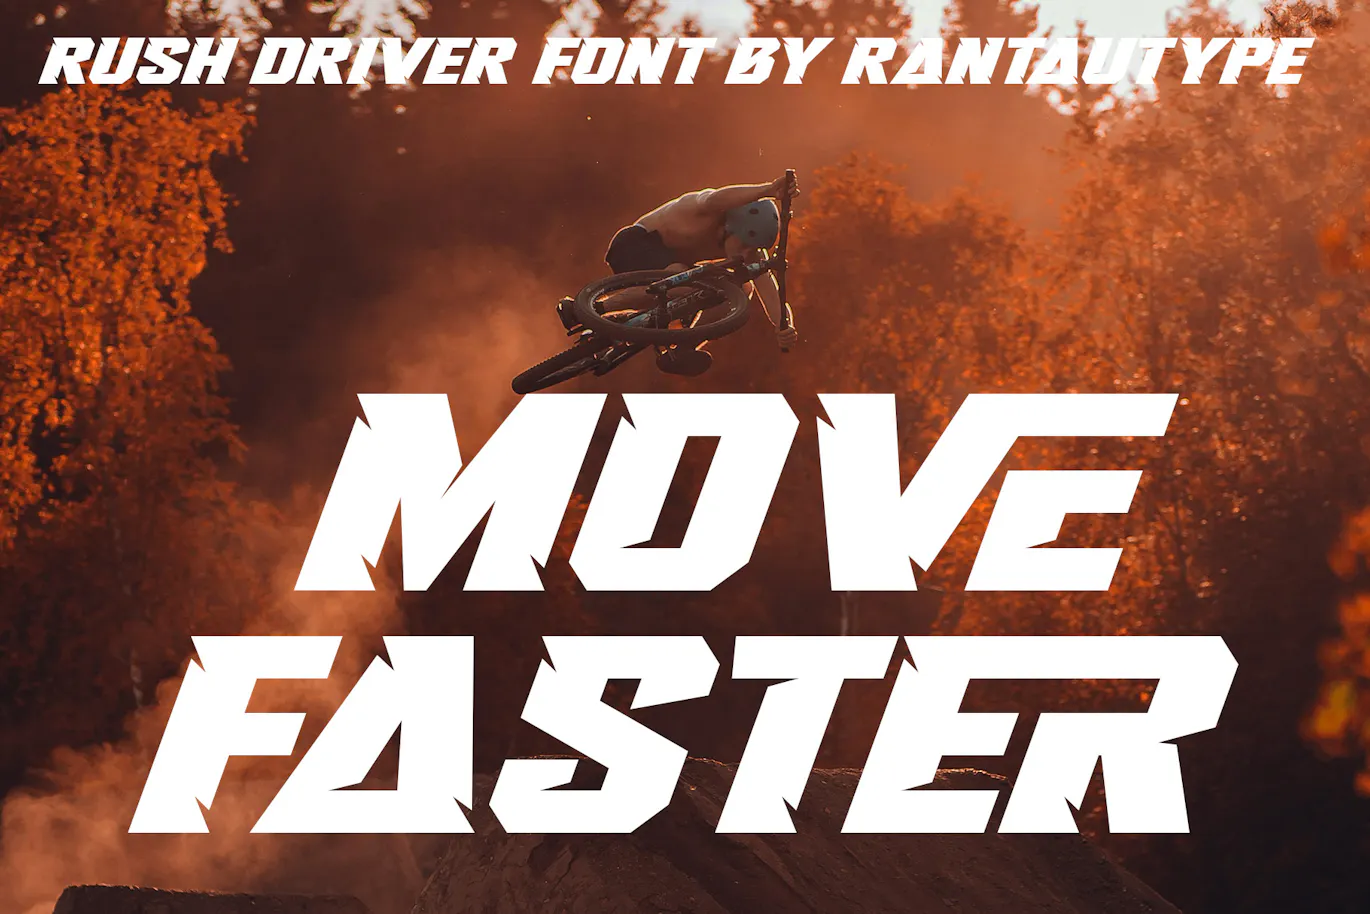 赛车品牌广告宣传的英文装饰字体 - Rush Driver 设计字体 第2张